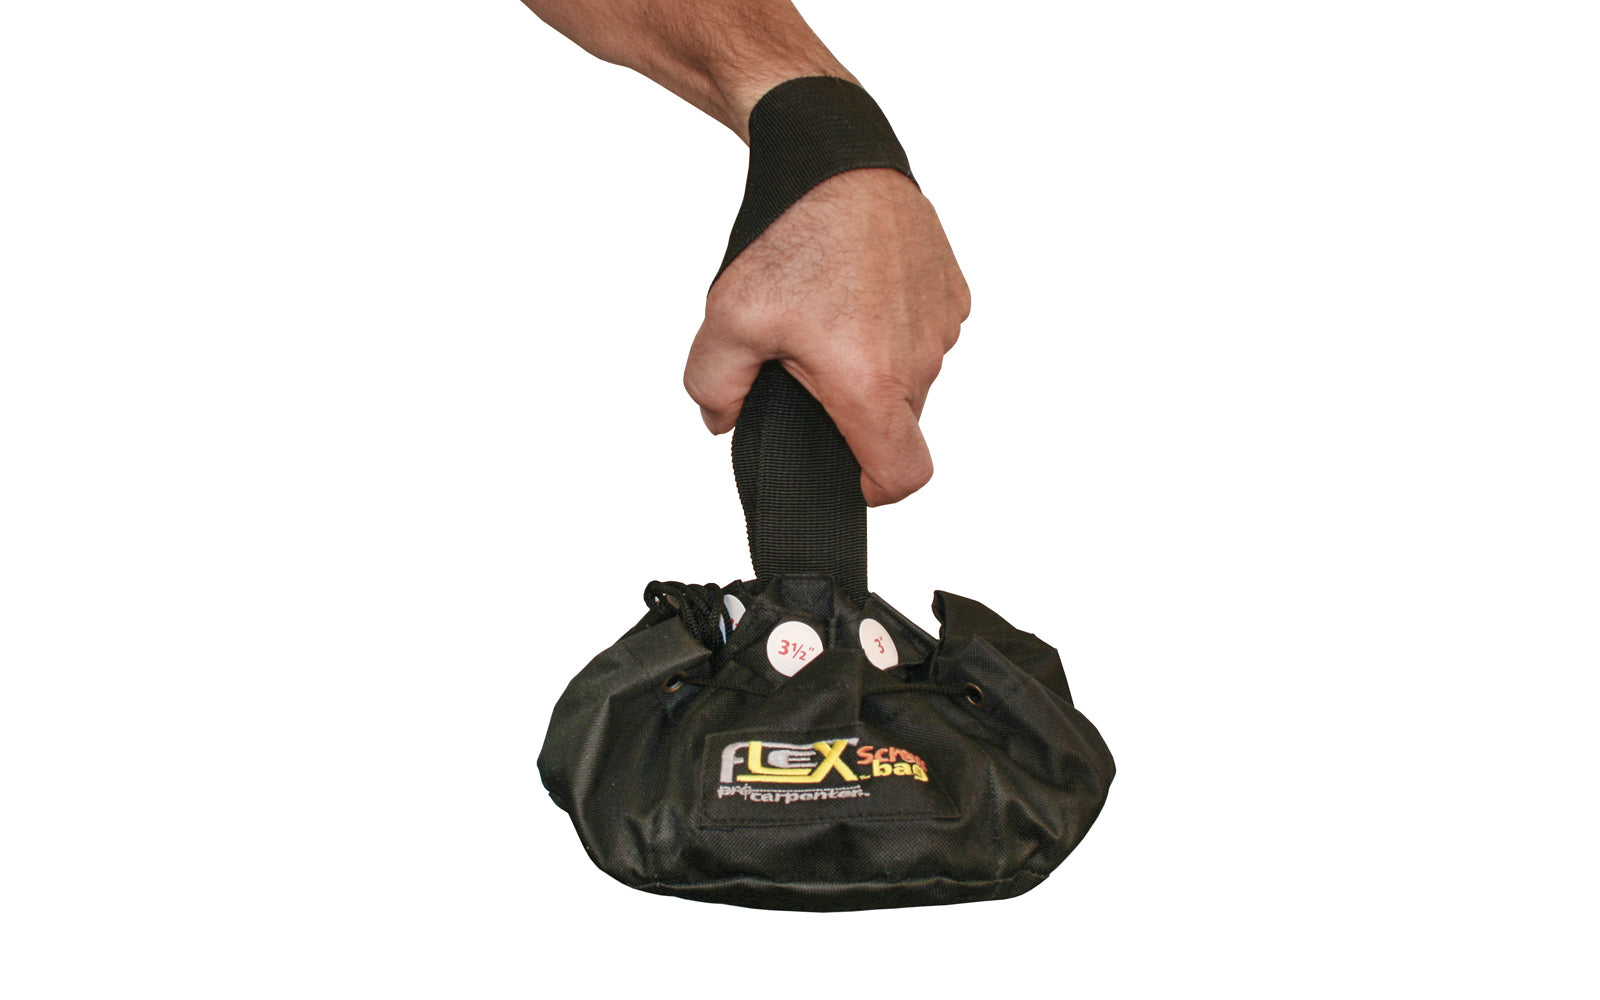 FastCap Flex Screw Bag - Round